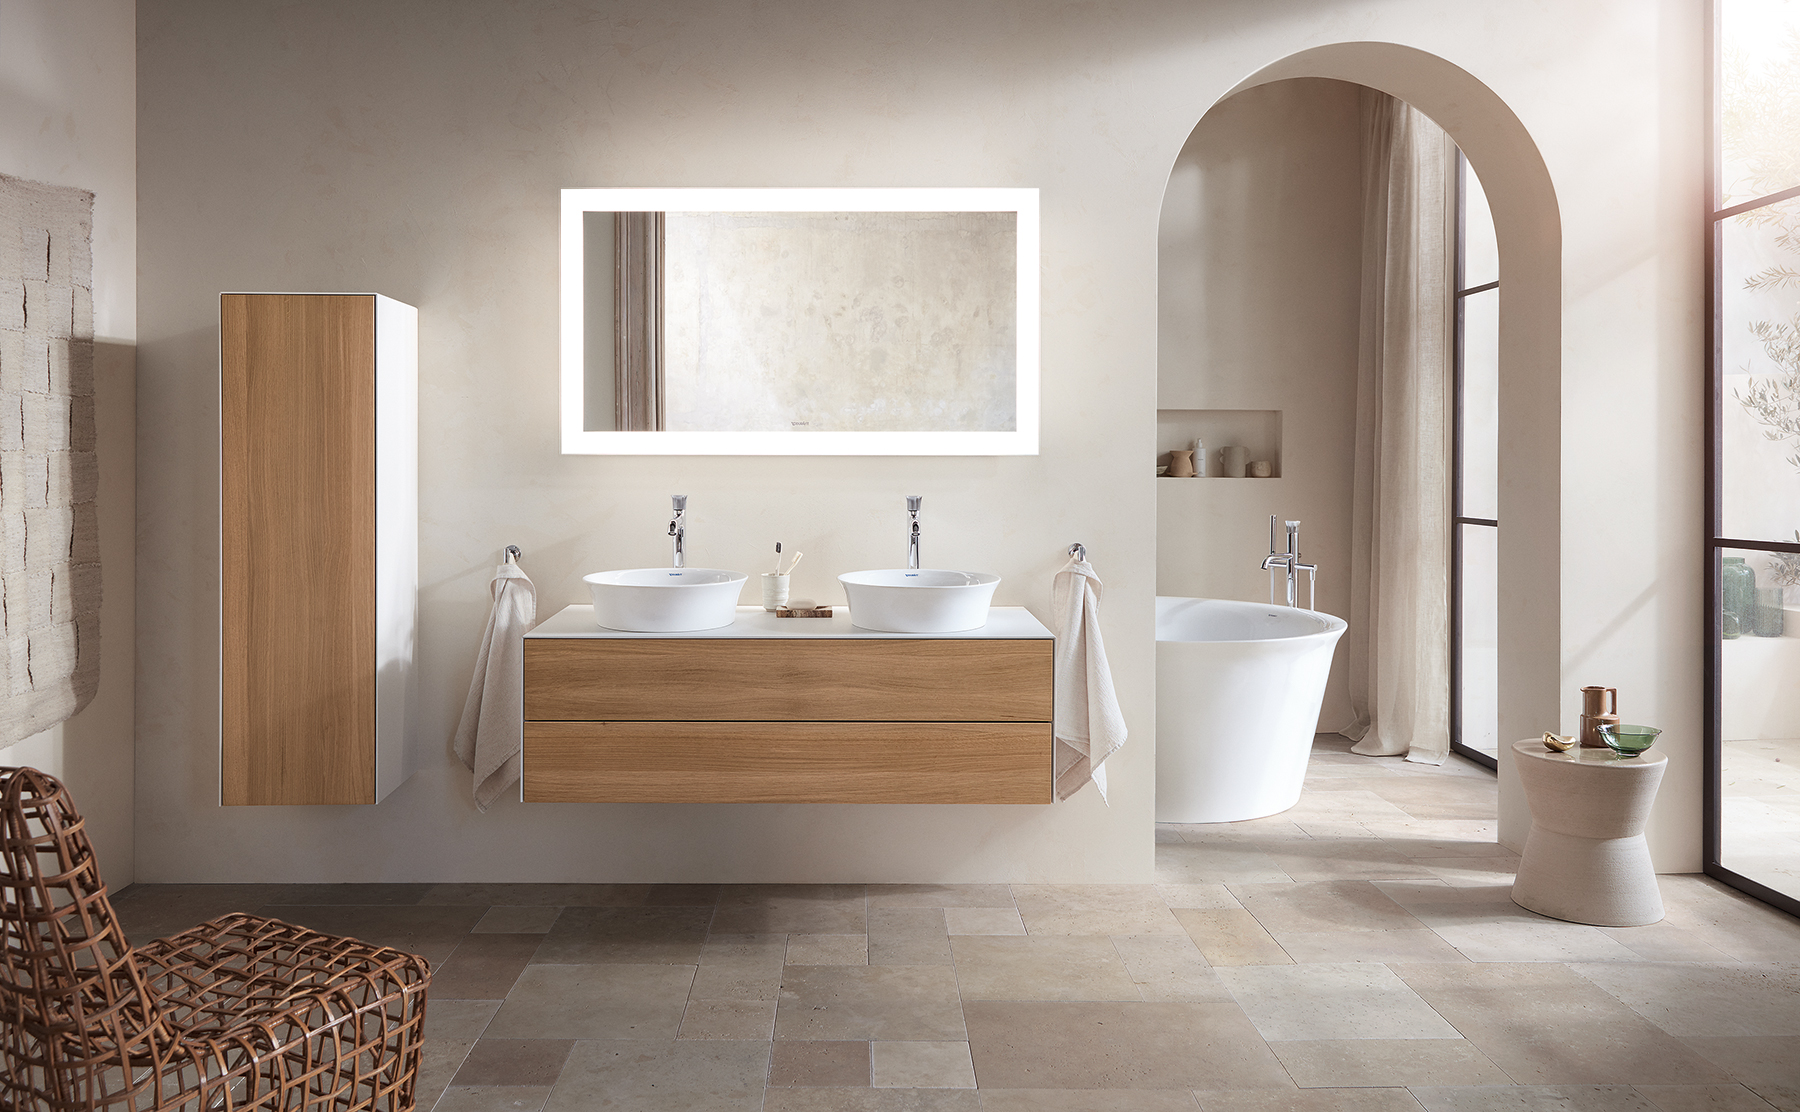 Bathroom trends – 18 inspiring styles for fresh new look   Livingetc  